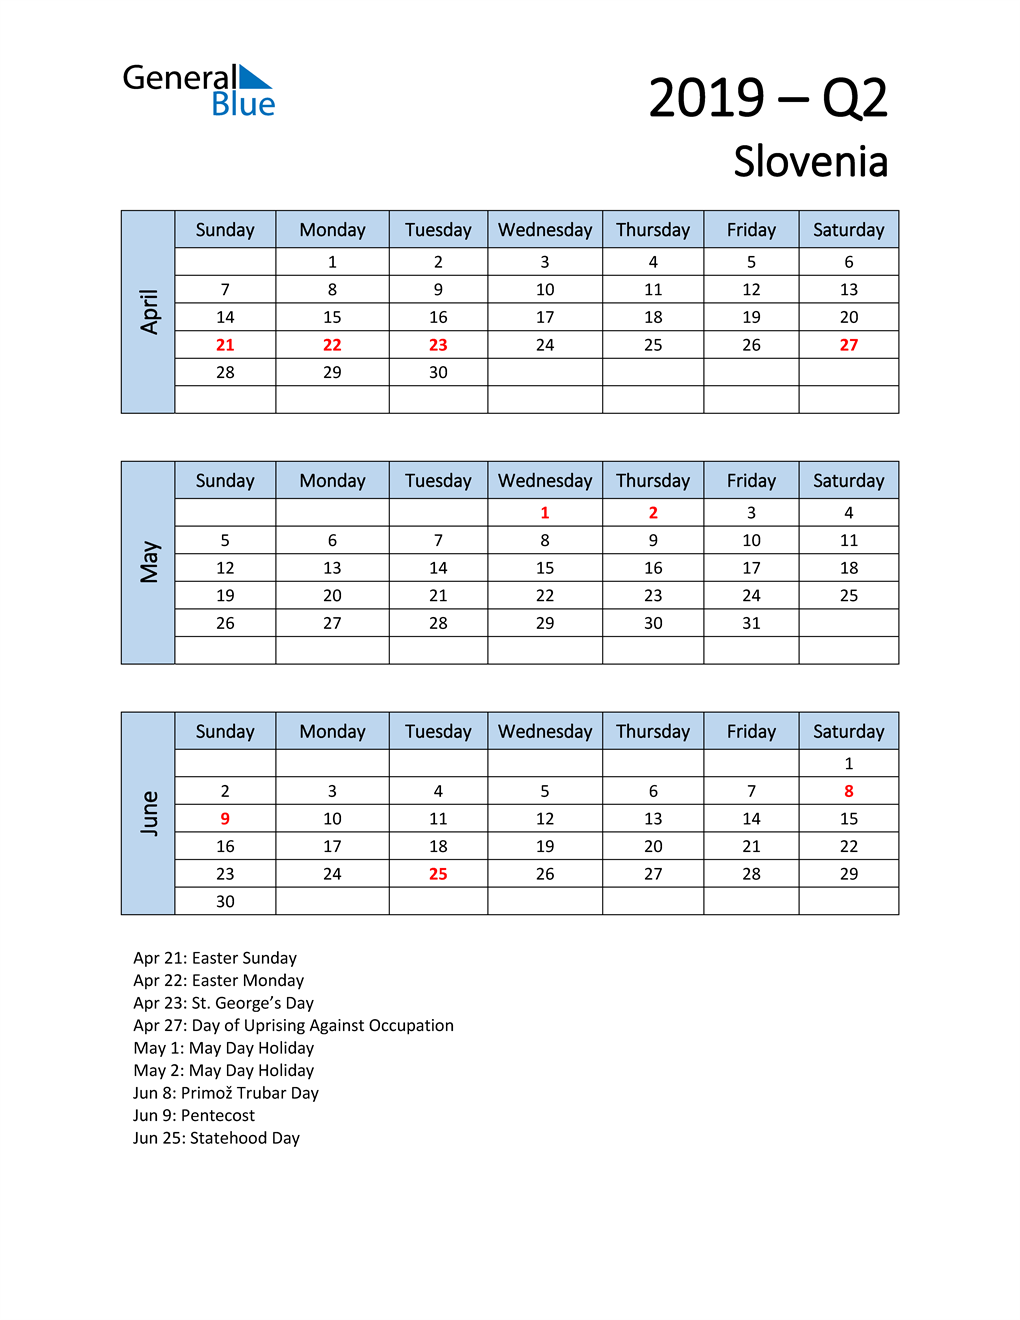  Free Q2 2019 Calendar for Slovenia